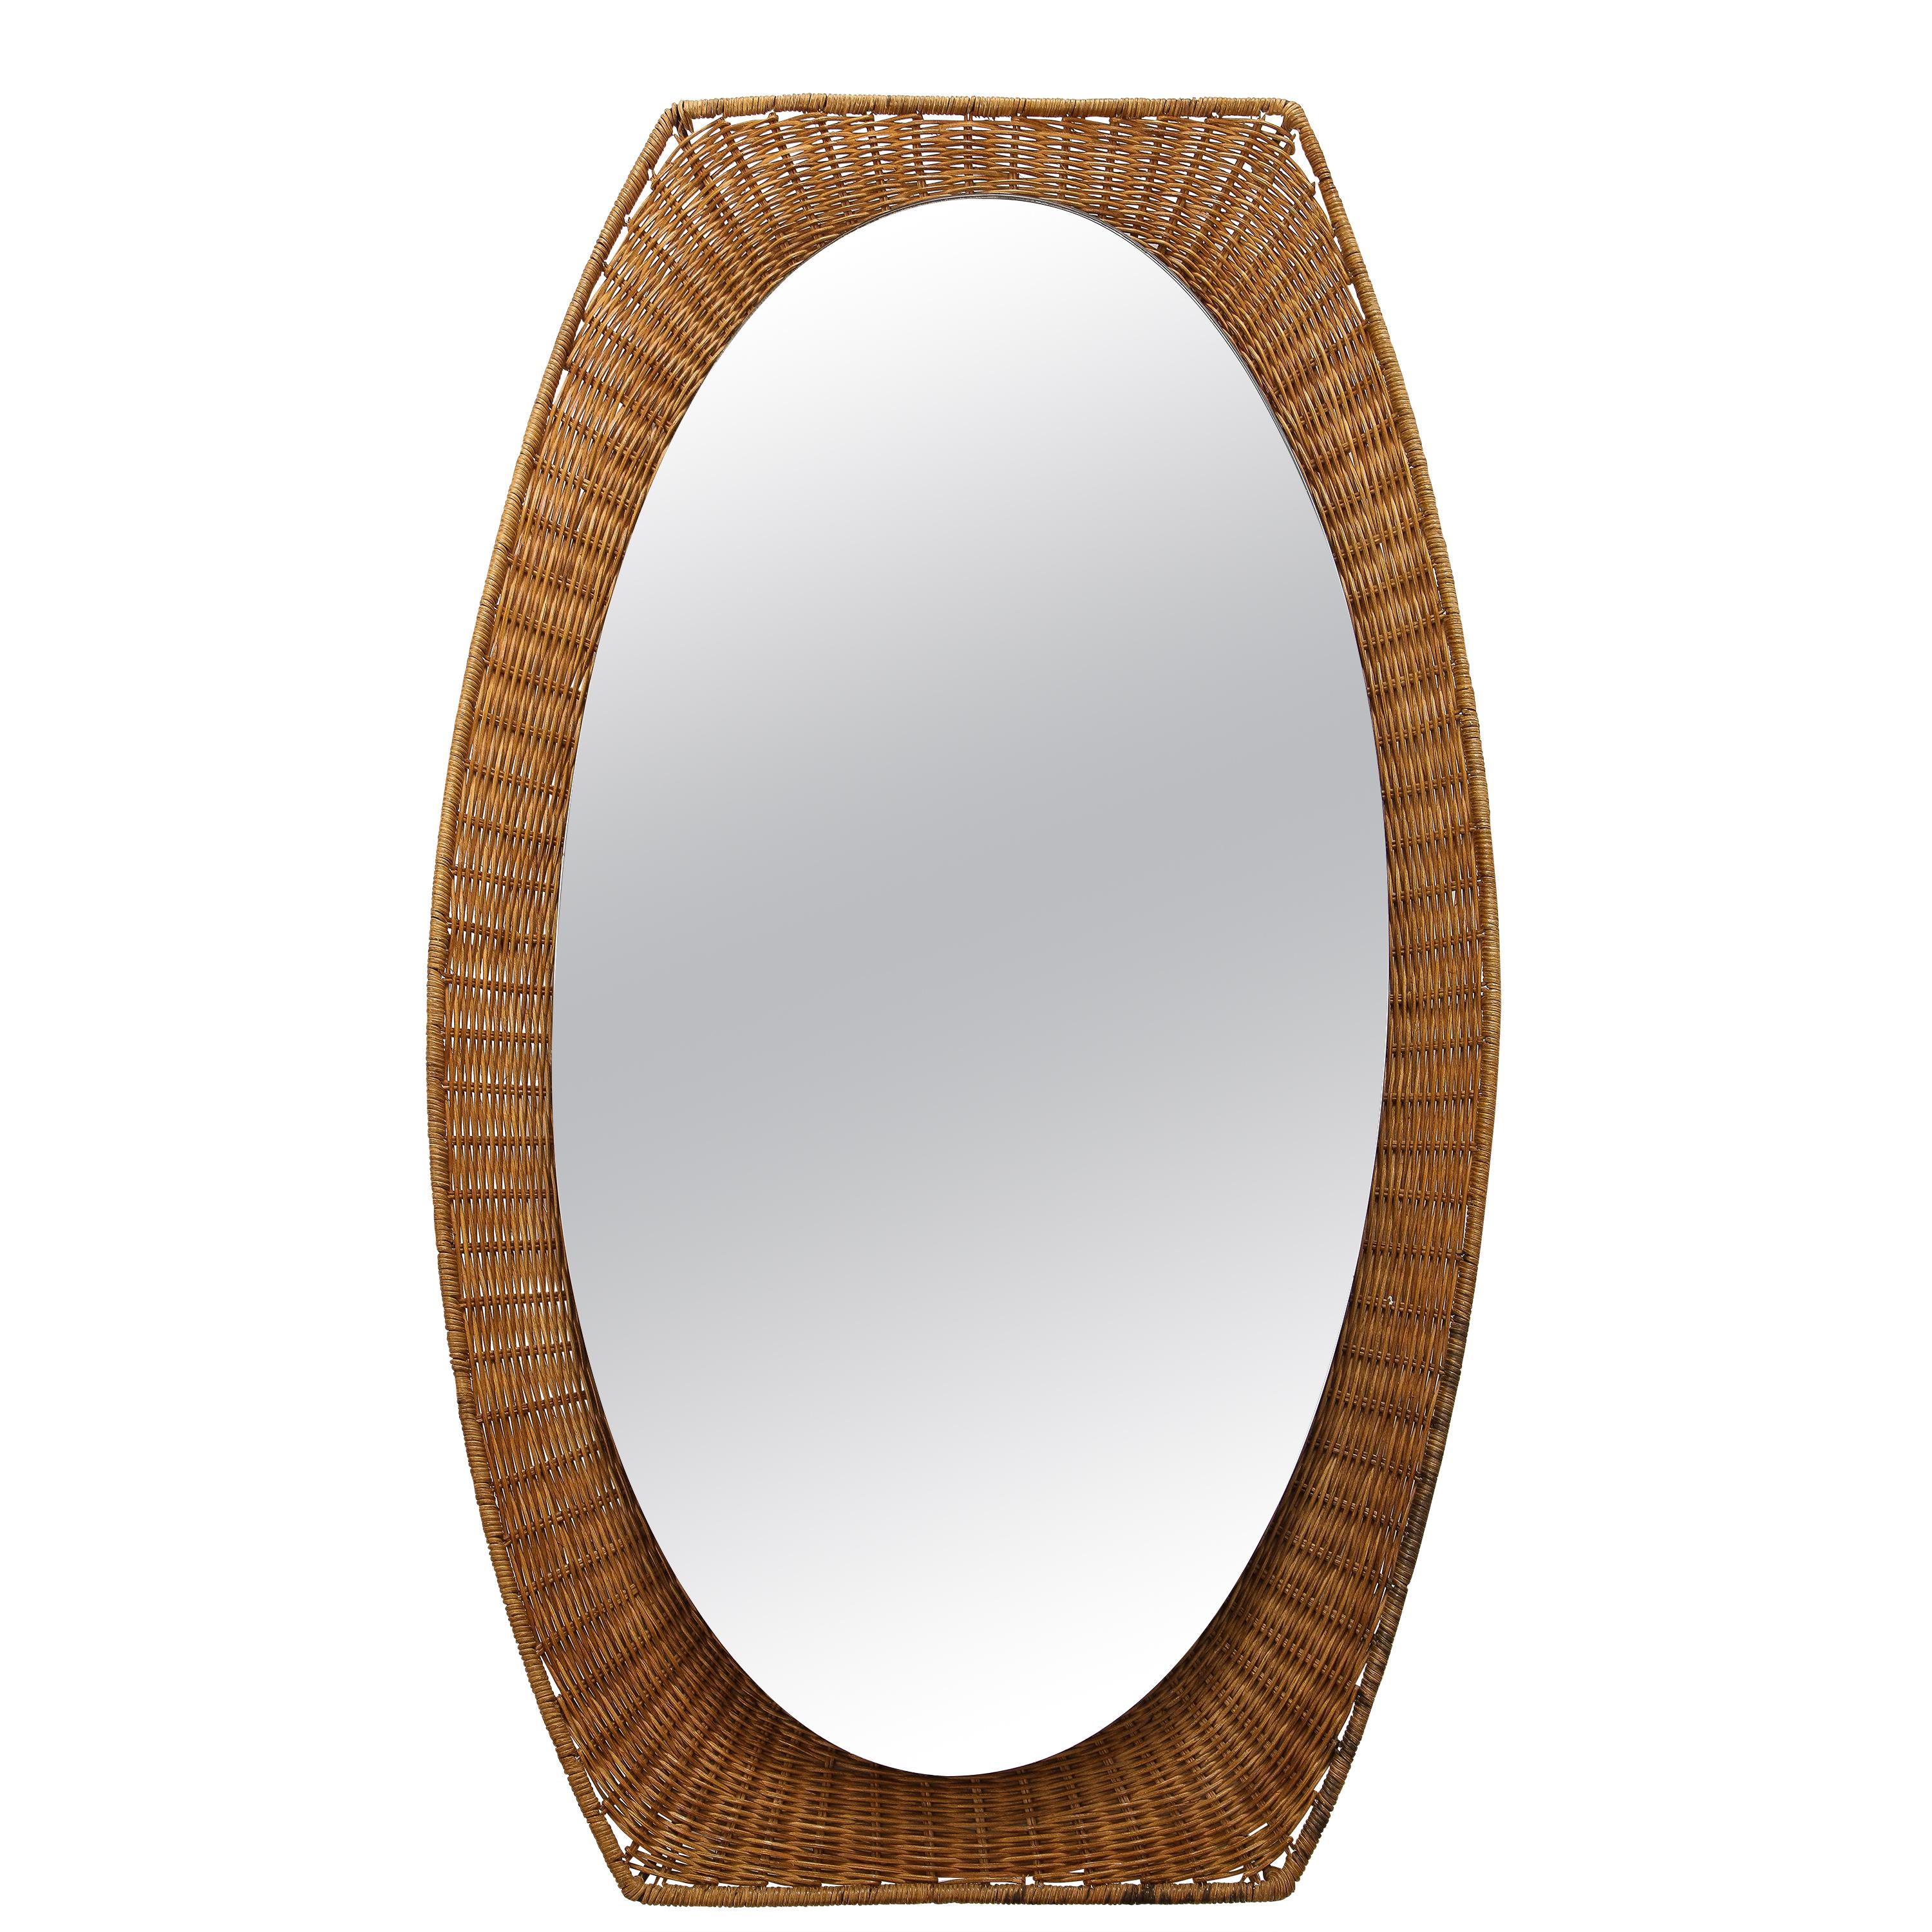 Italian 1950s Wicker Oval Shaped Mirror